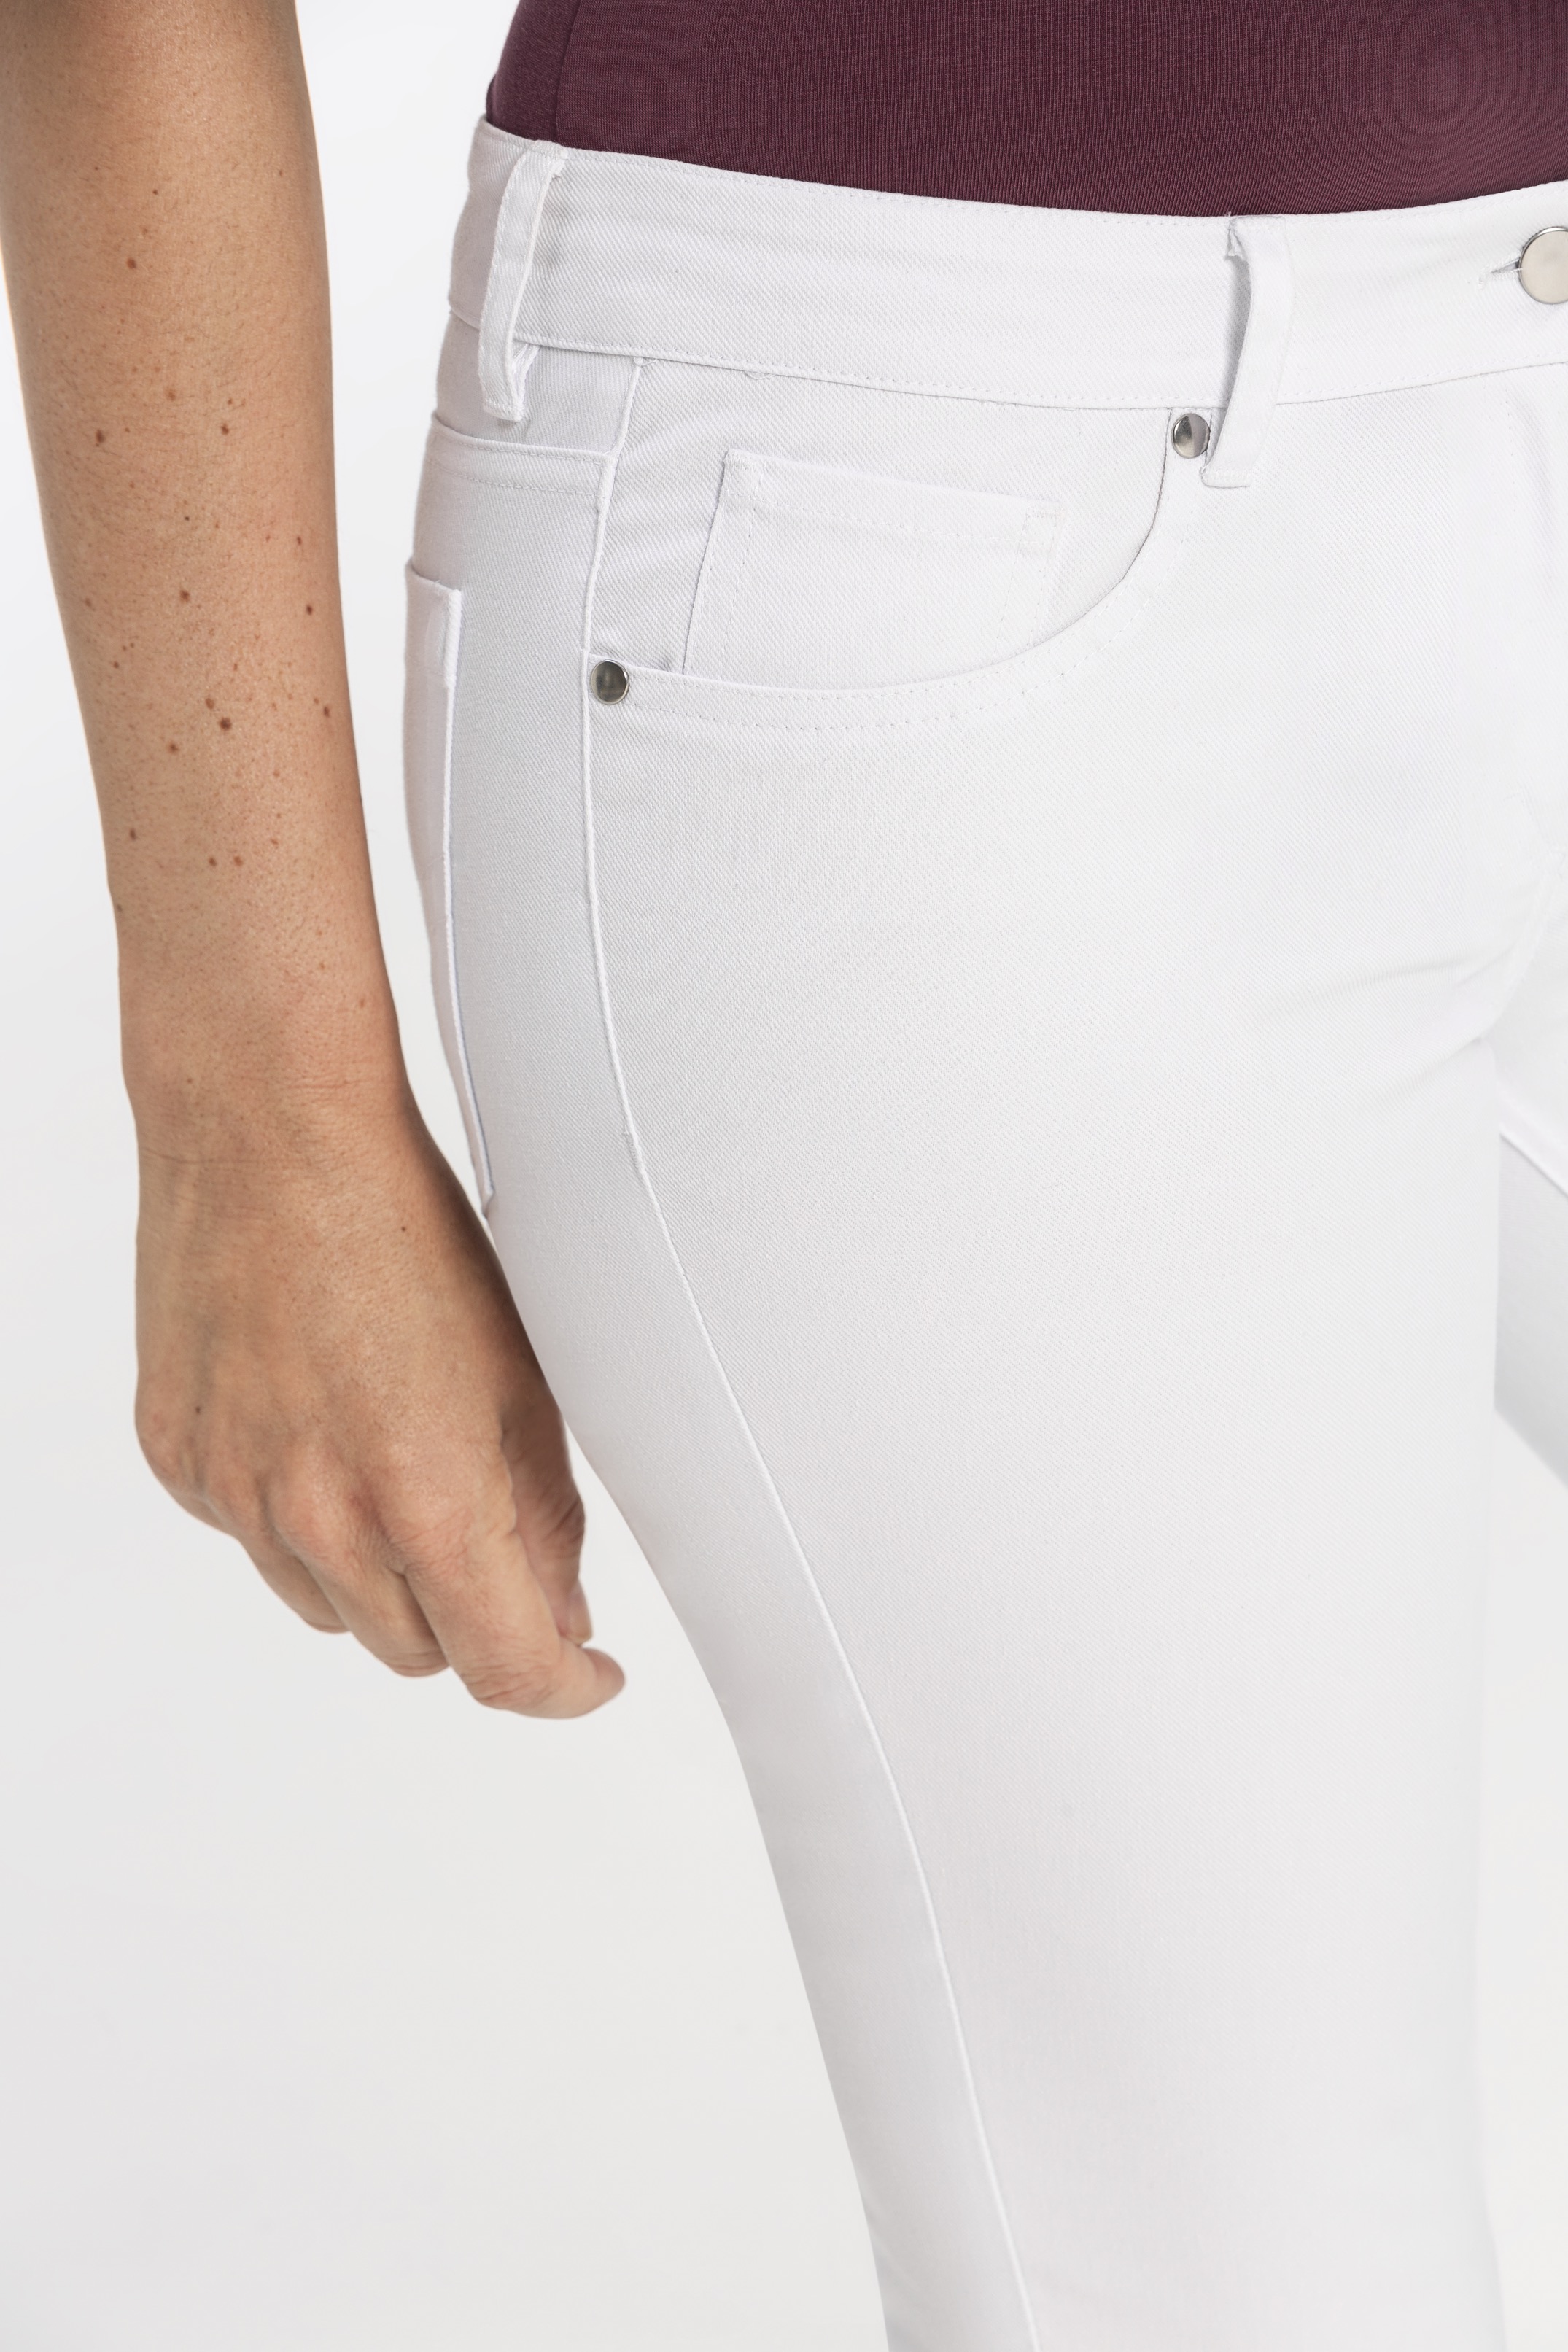 Damen-Hose "Five Pocket" Regular Fit 